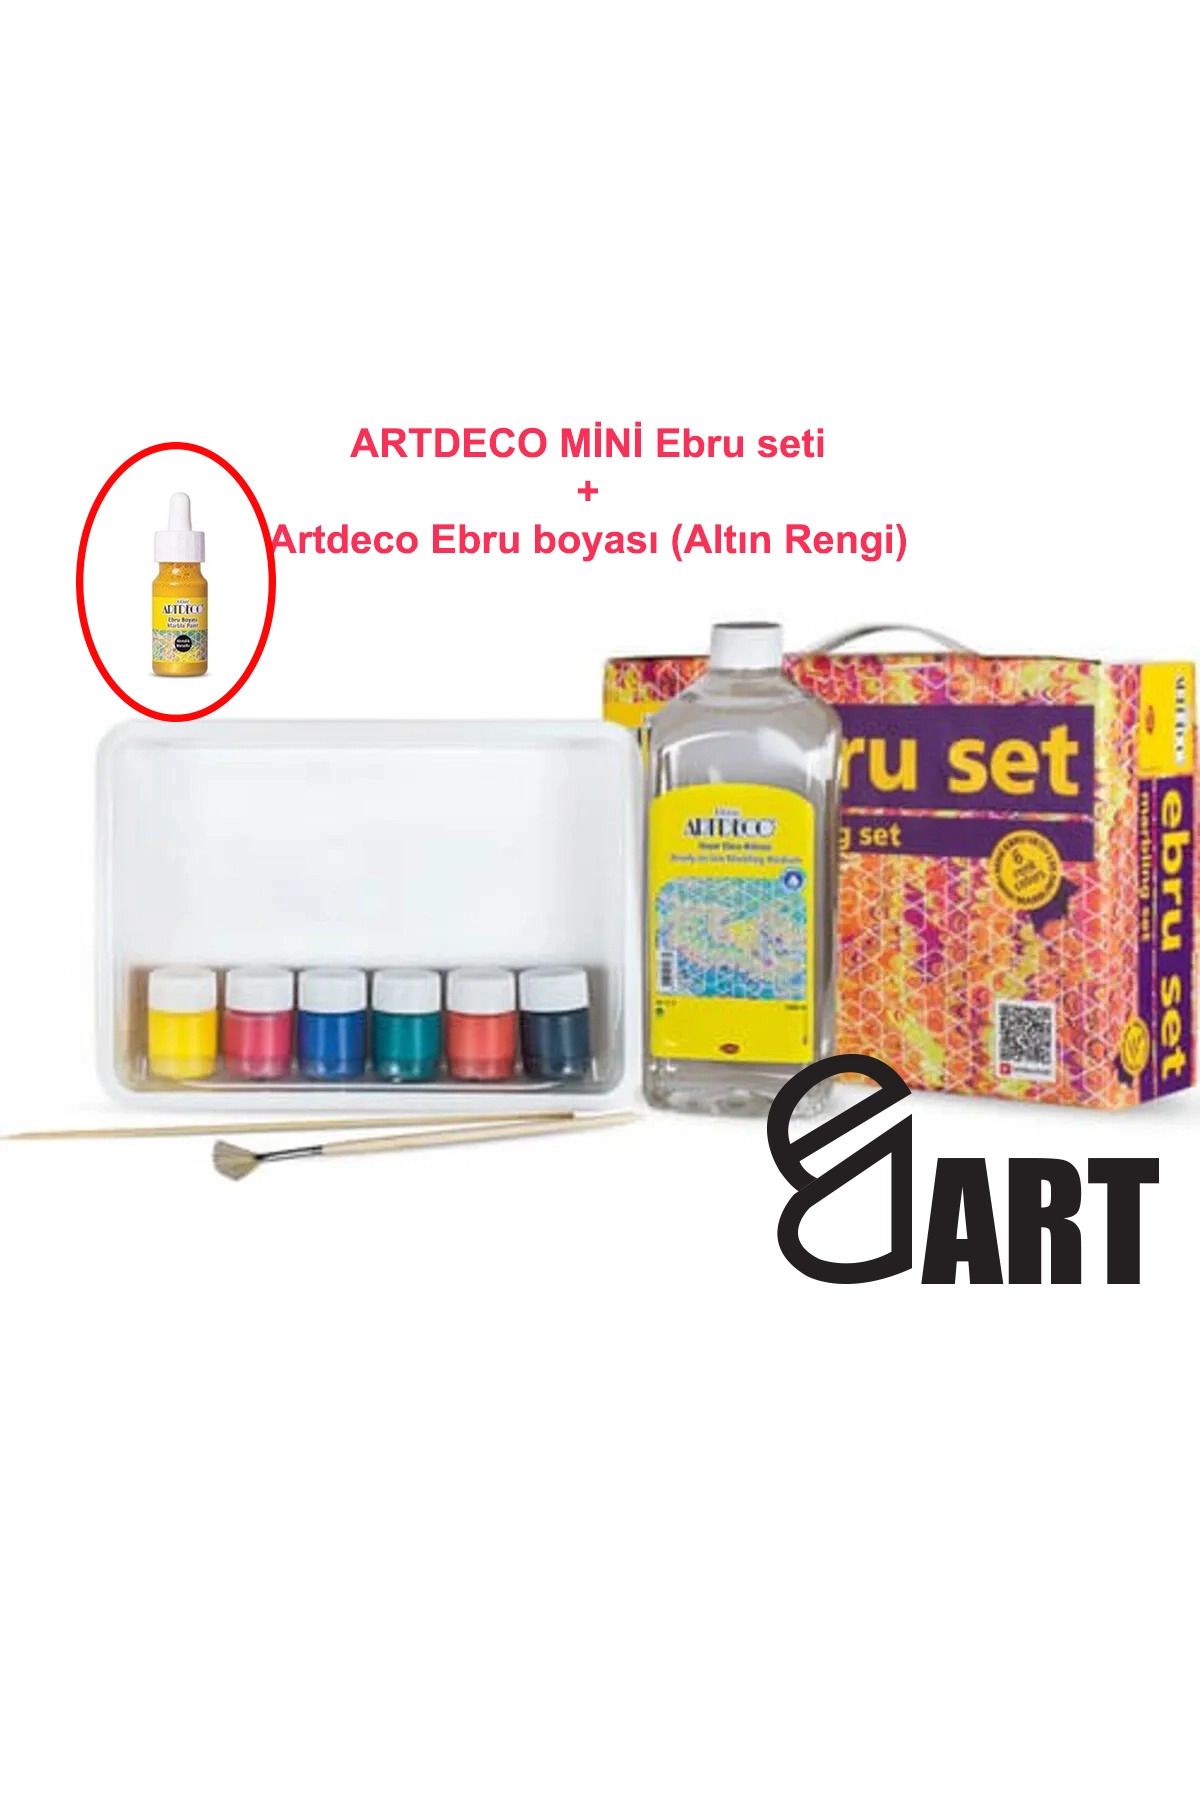 Artdeco Mini Boy 6 Renk Ebru Seti Ve 1 Adet Altın Rengi